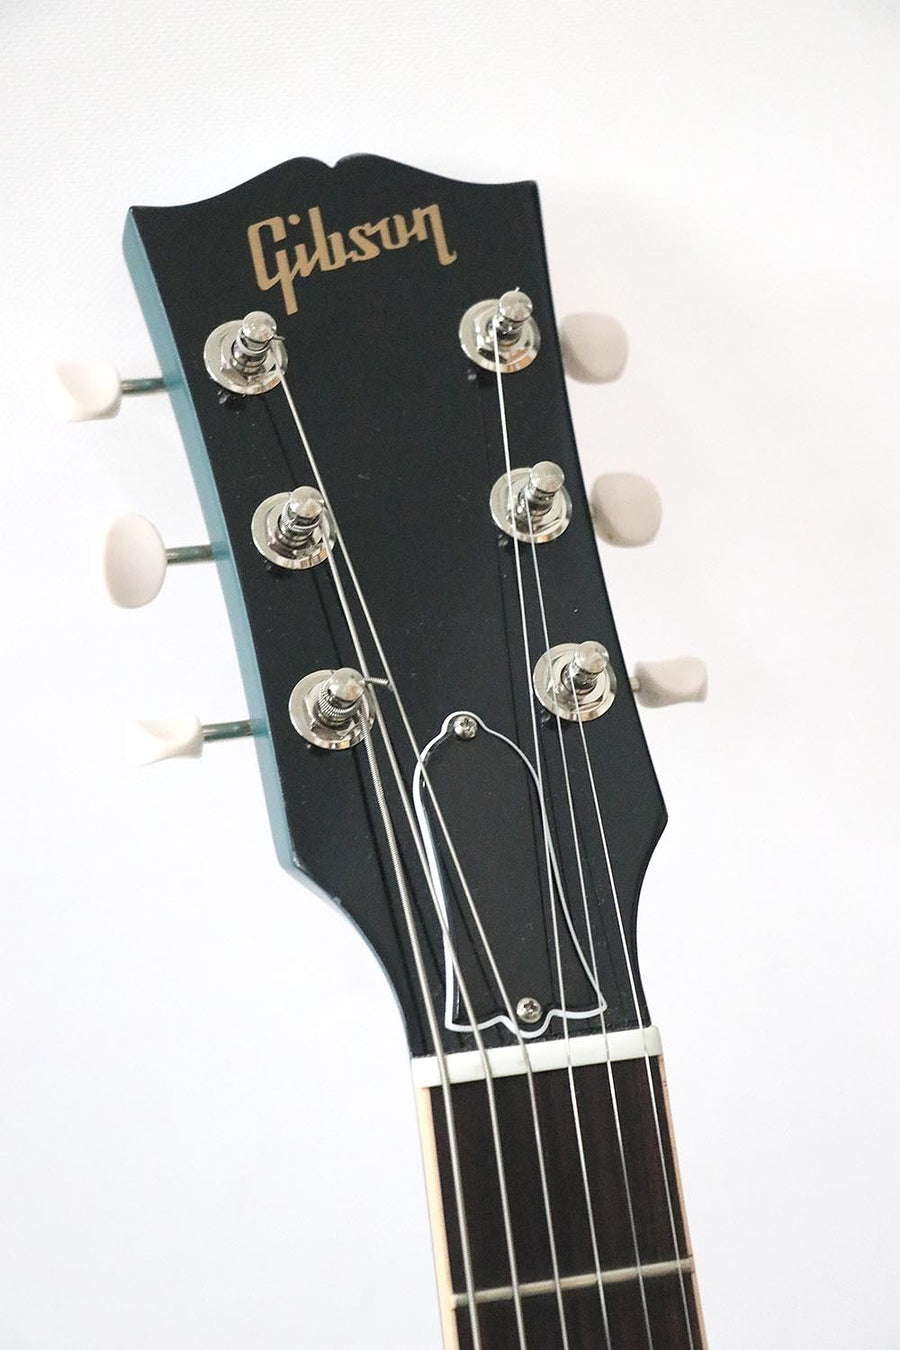 Gibson SG Special - Faded Pelham Blue